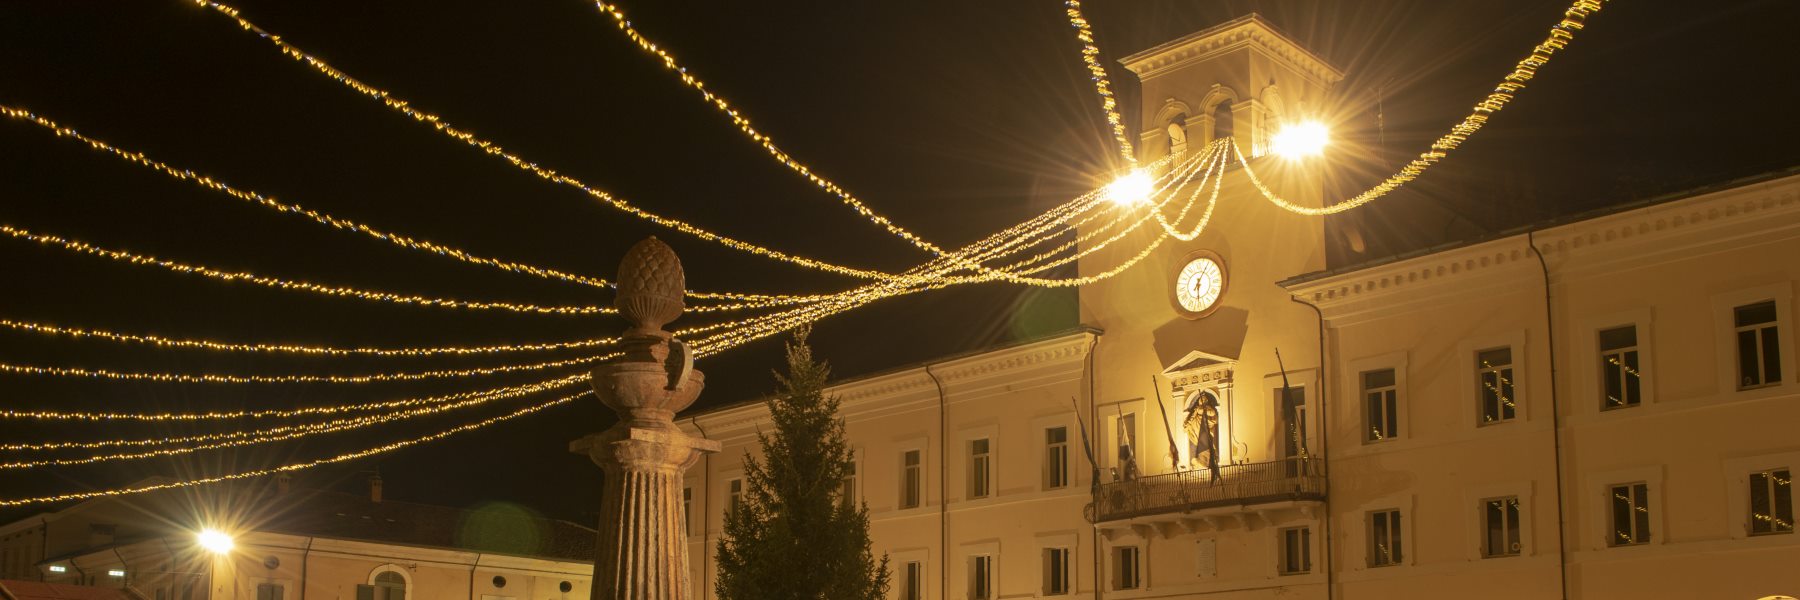 1 - Luci di Natale in Piazza Garibaldi